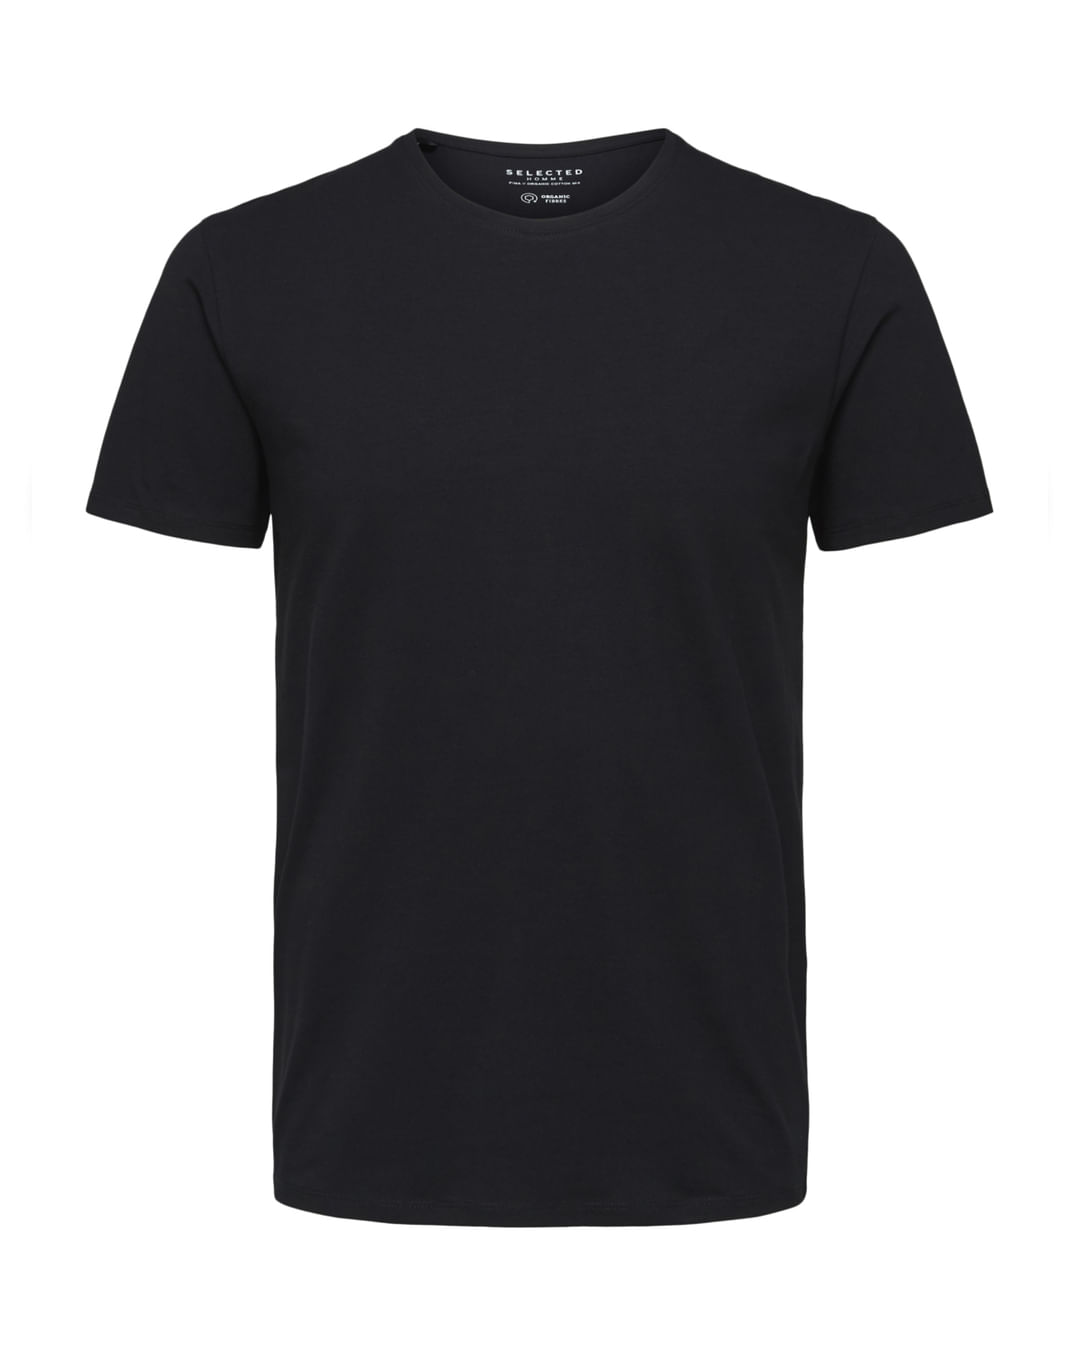 SS T-SHIRT TECH BE ONE T-shirt de running - Homme - Boutique en